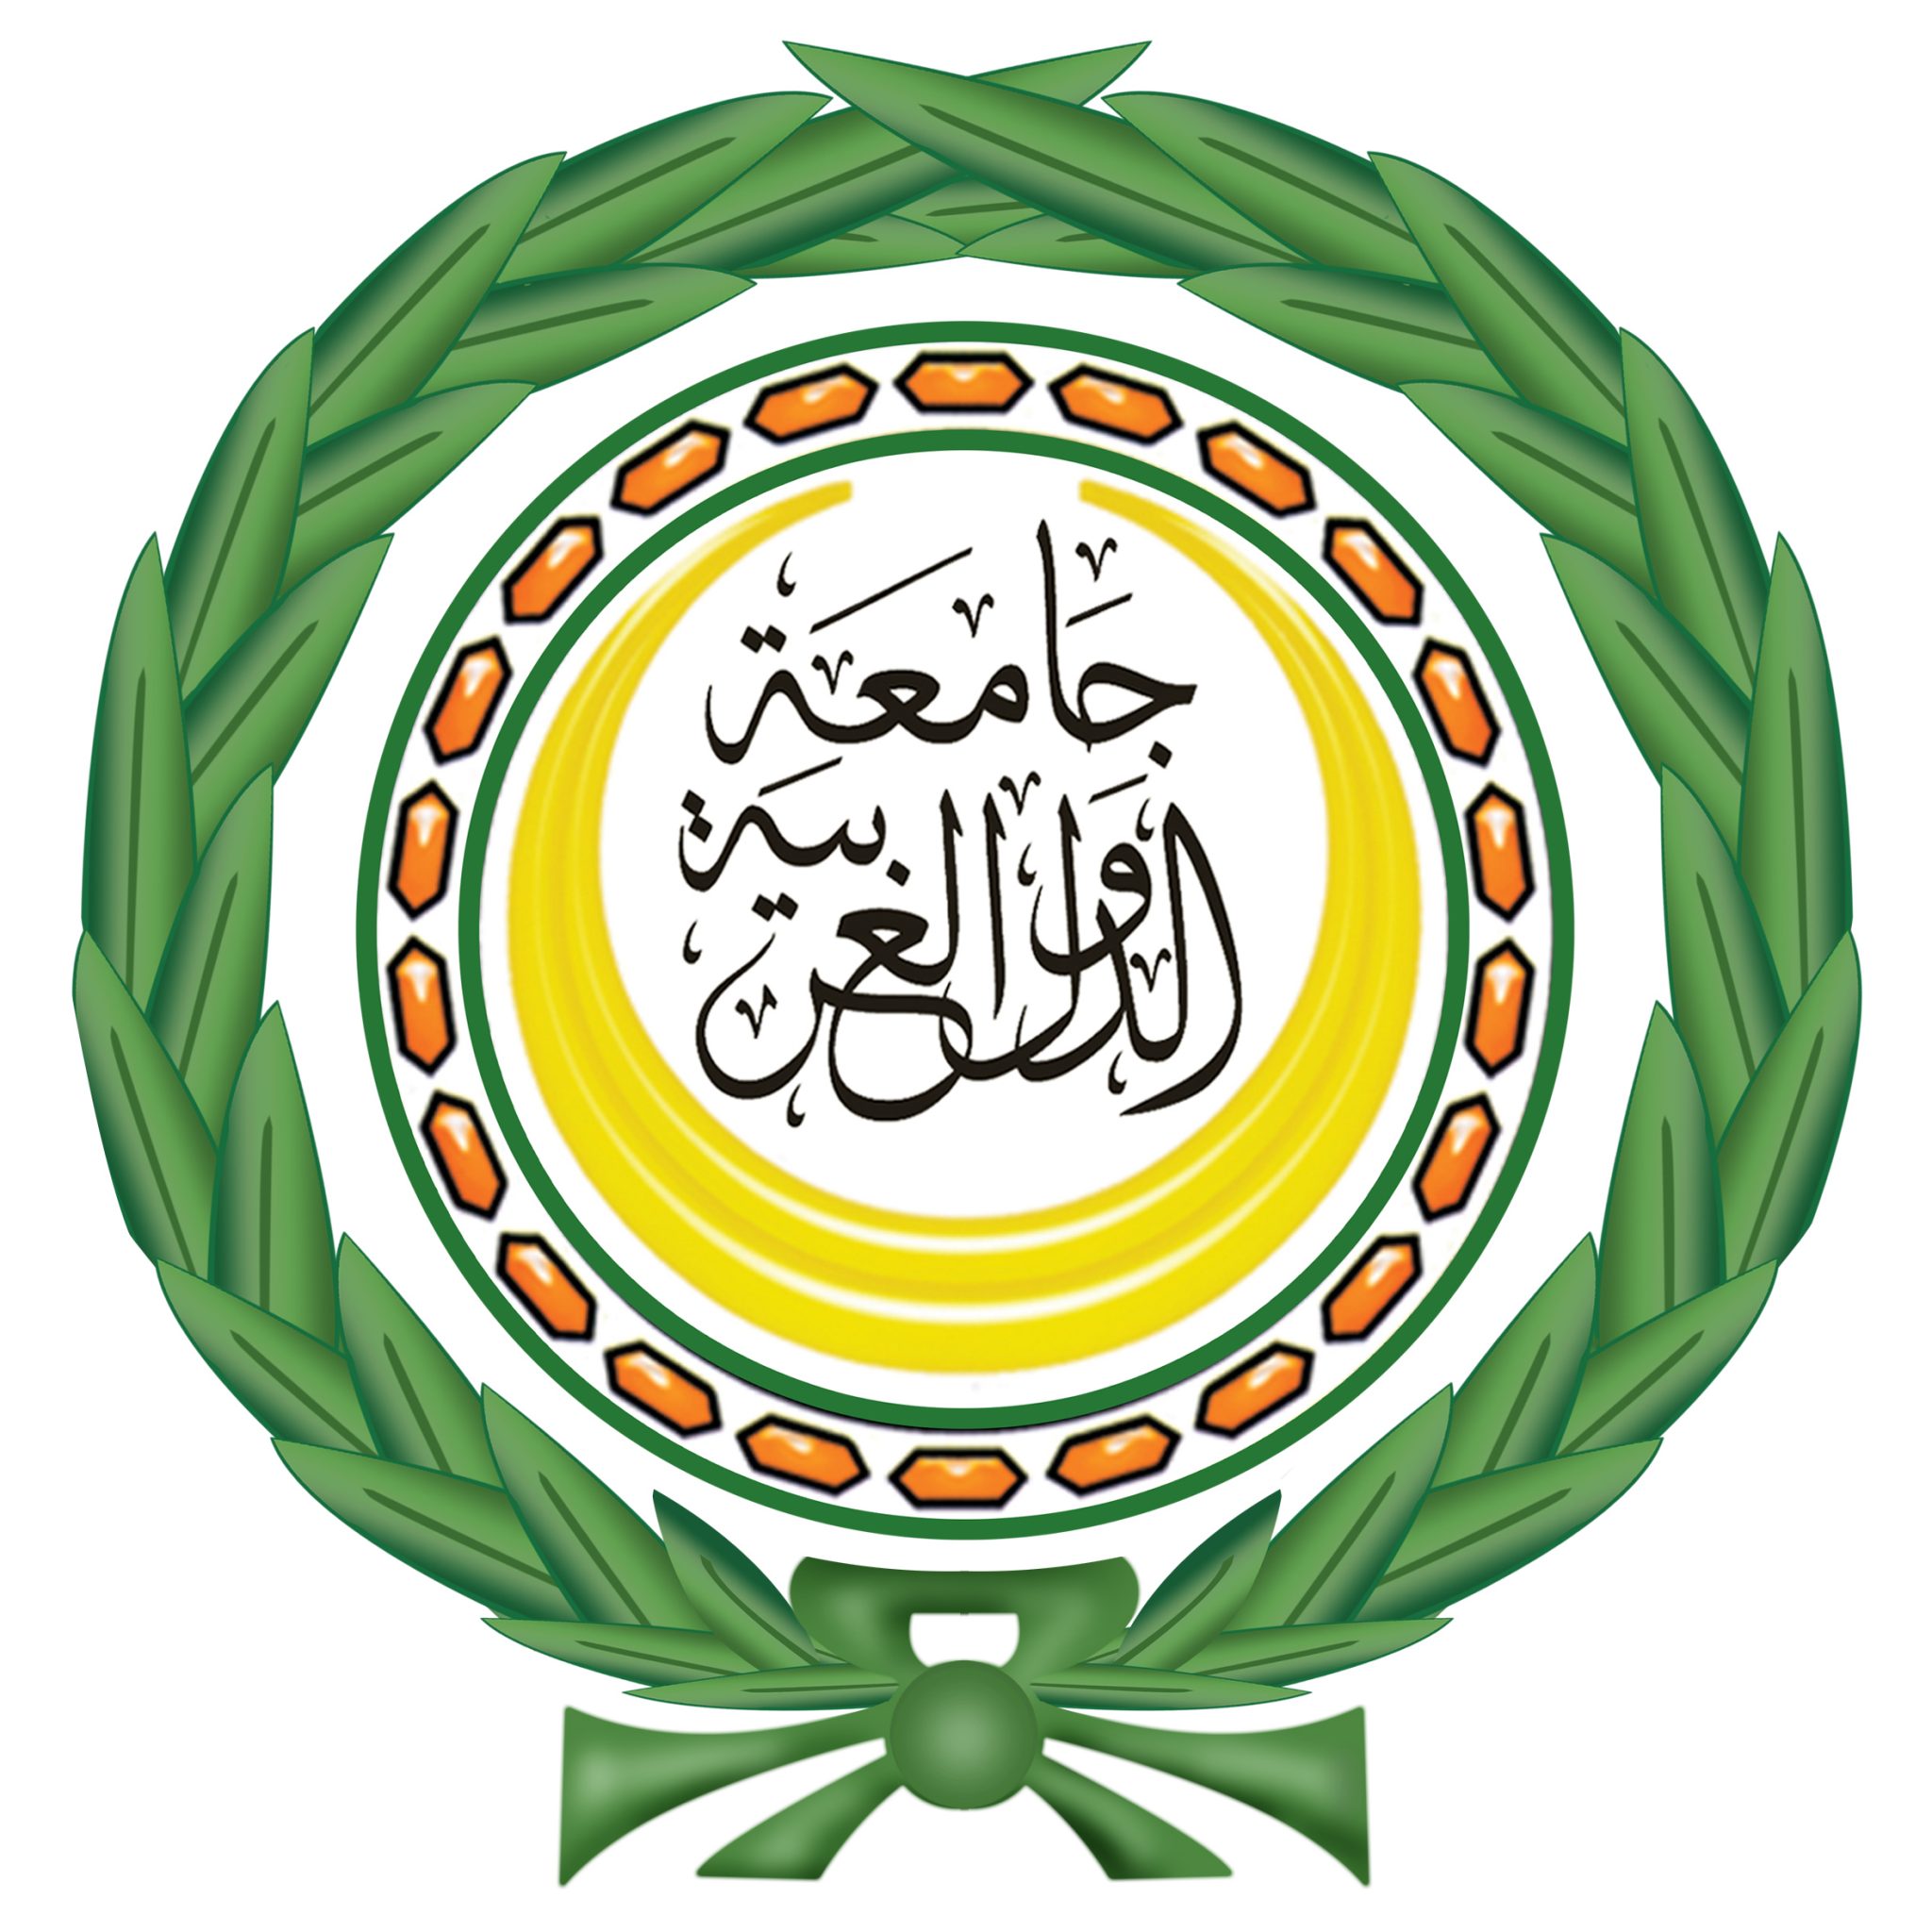   مفكرون موريتانيون يثمنون جهود الجامعة العربية في ذكرى تأسيها